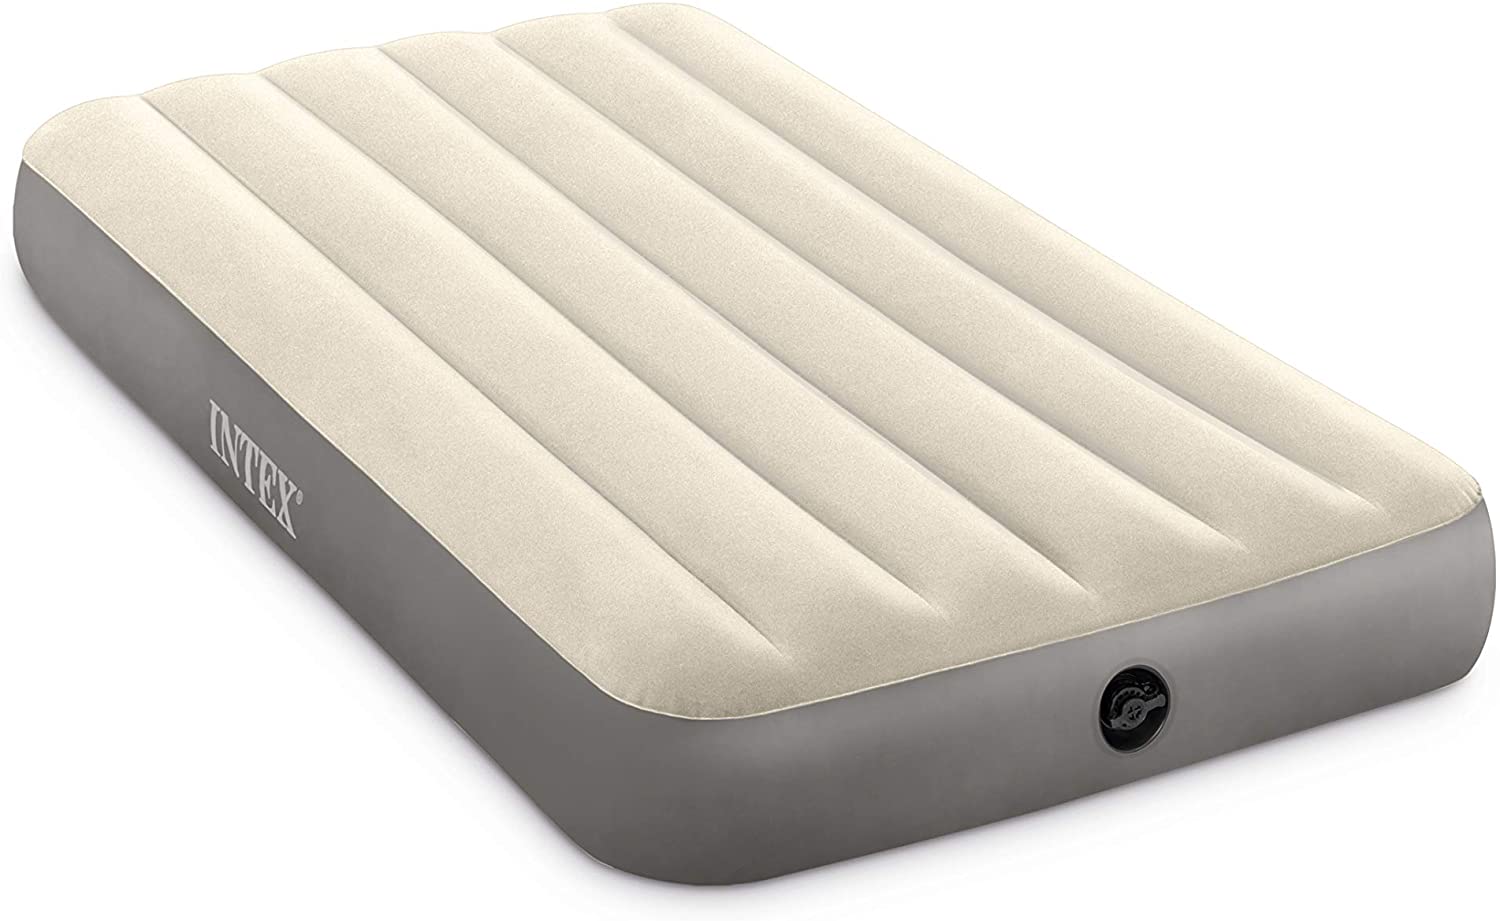 video on intex dura beam standard air mattress